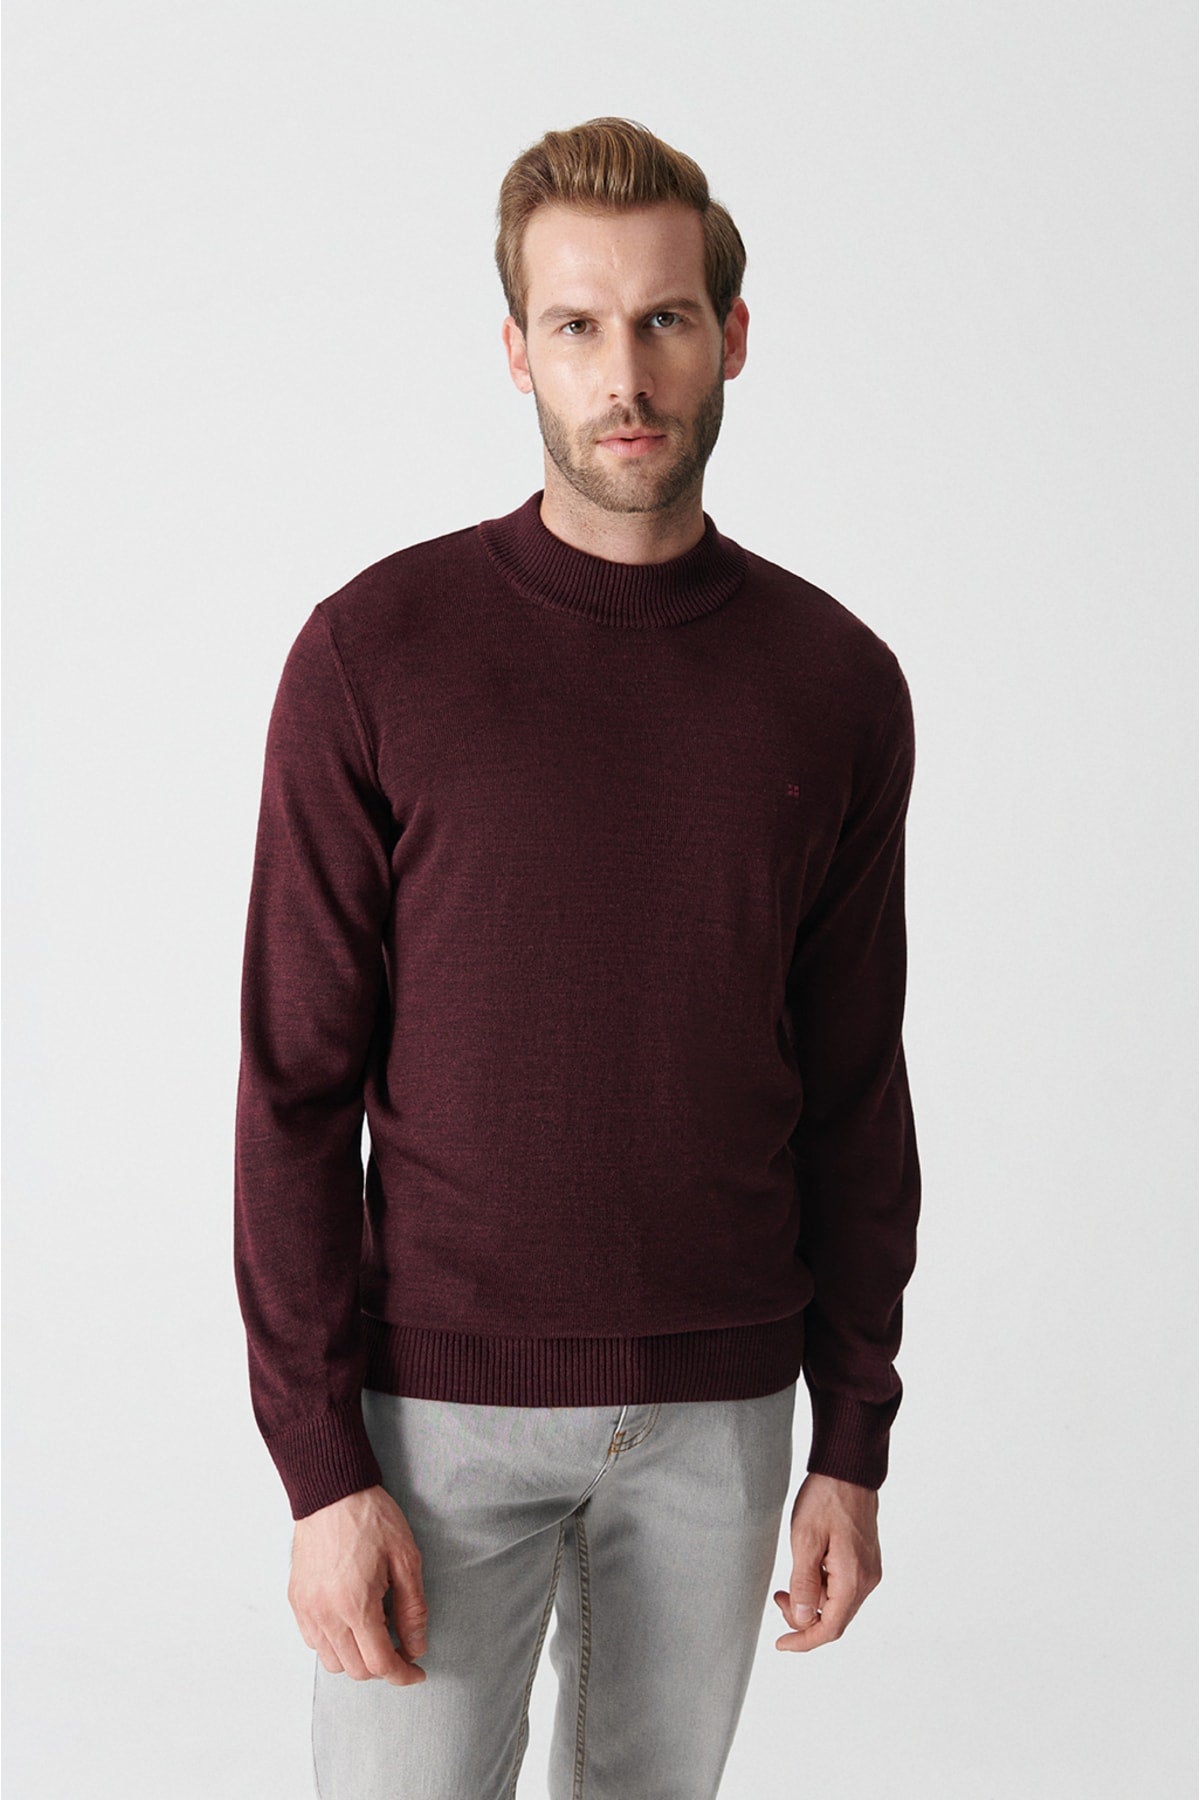 Bordeaux Half Fisherman Collar Unisex Knitwear Sweater E005001